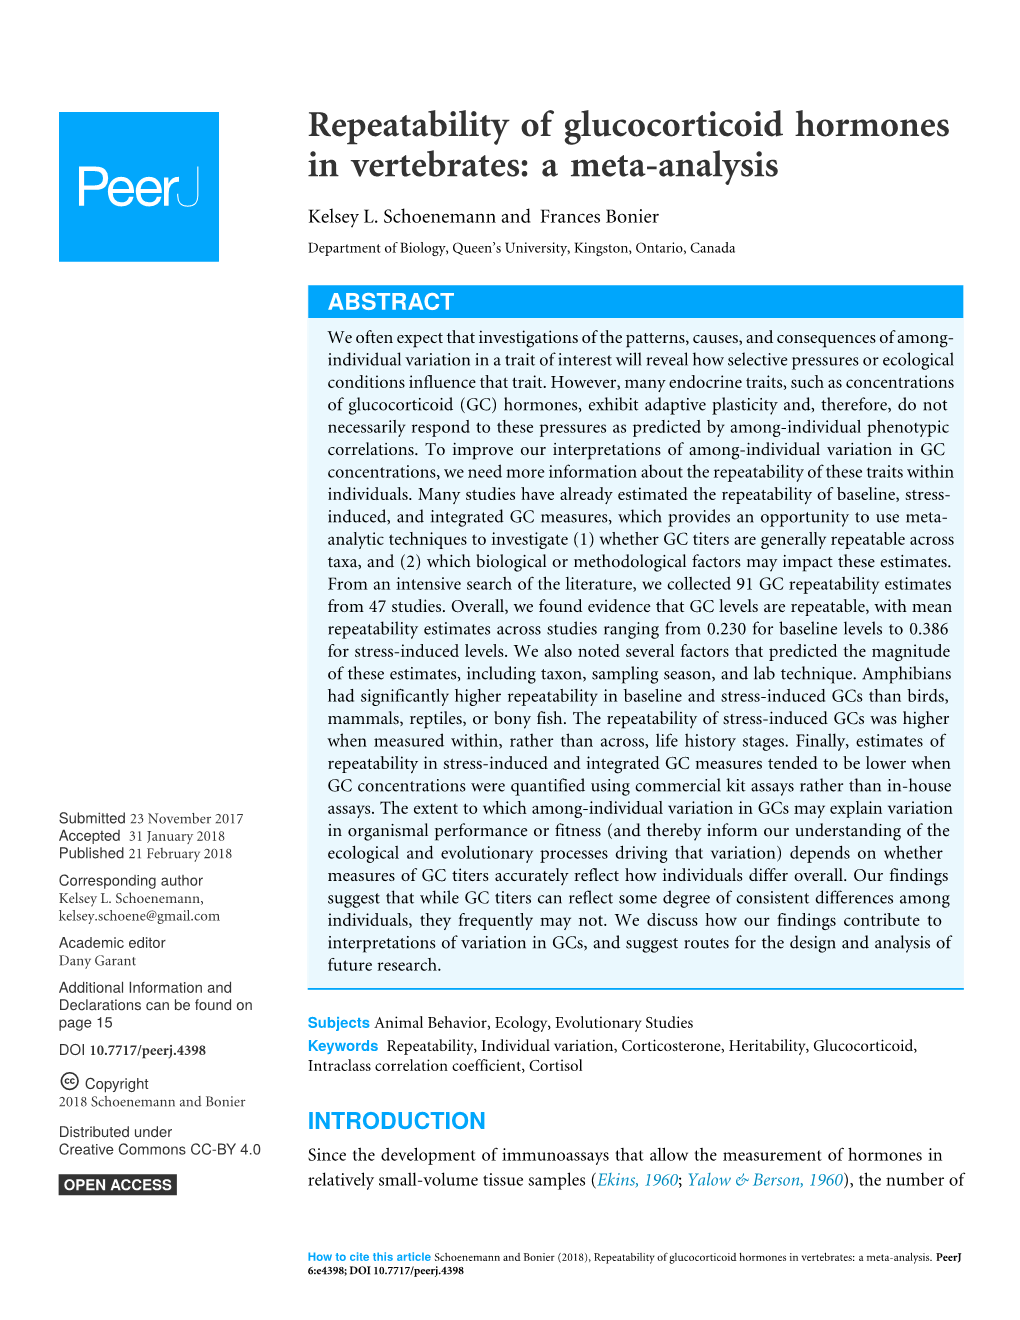 Repeatability of Glucocorticoid Hormones in Vertebrates: a Meta-Analysis